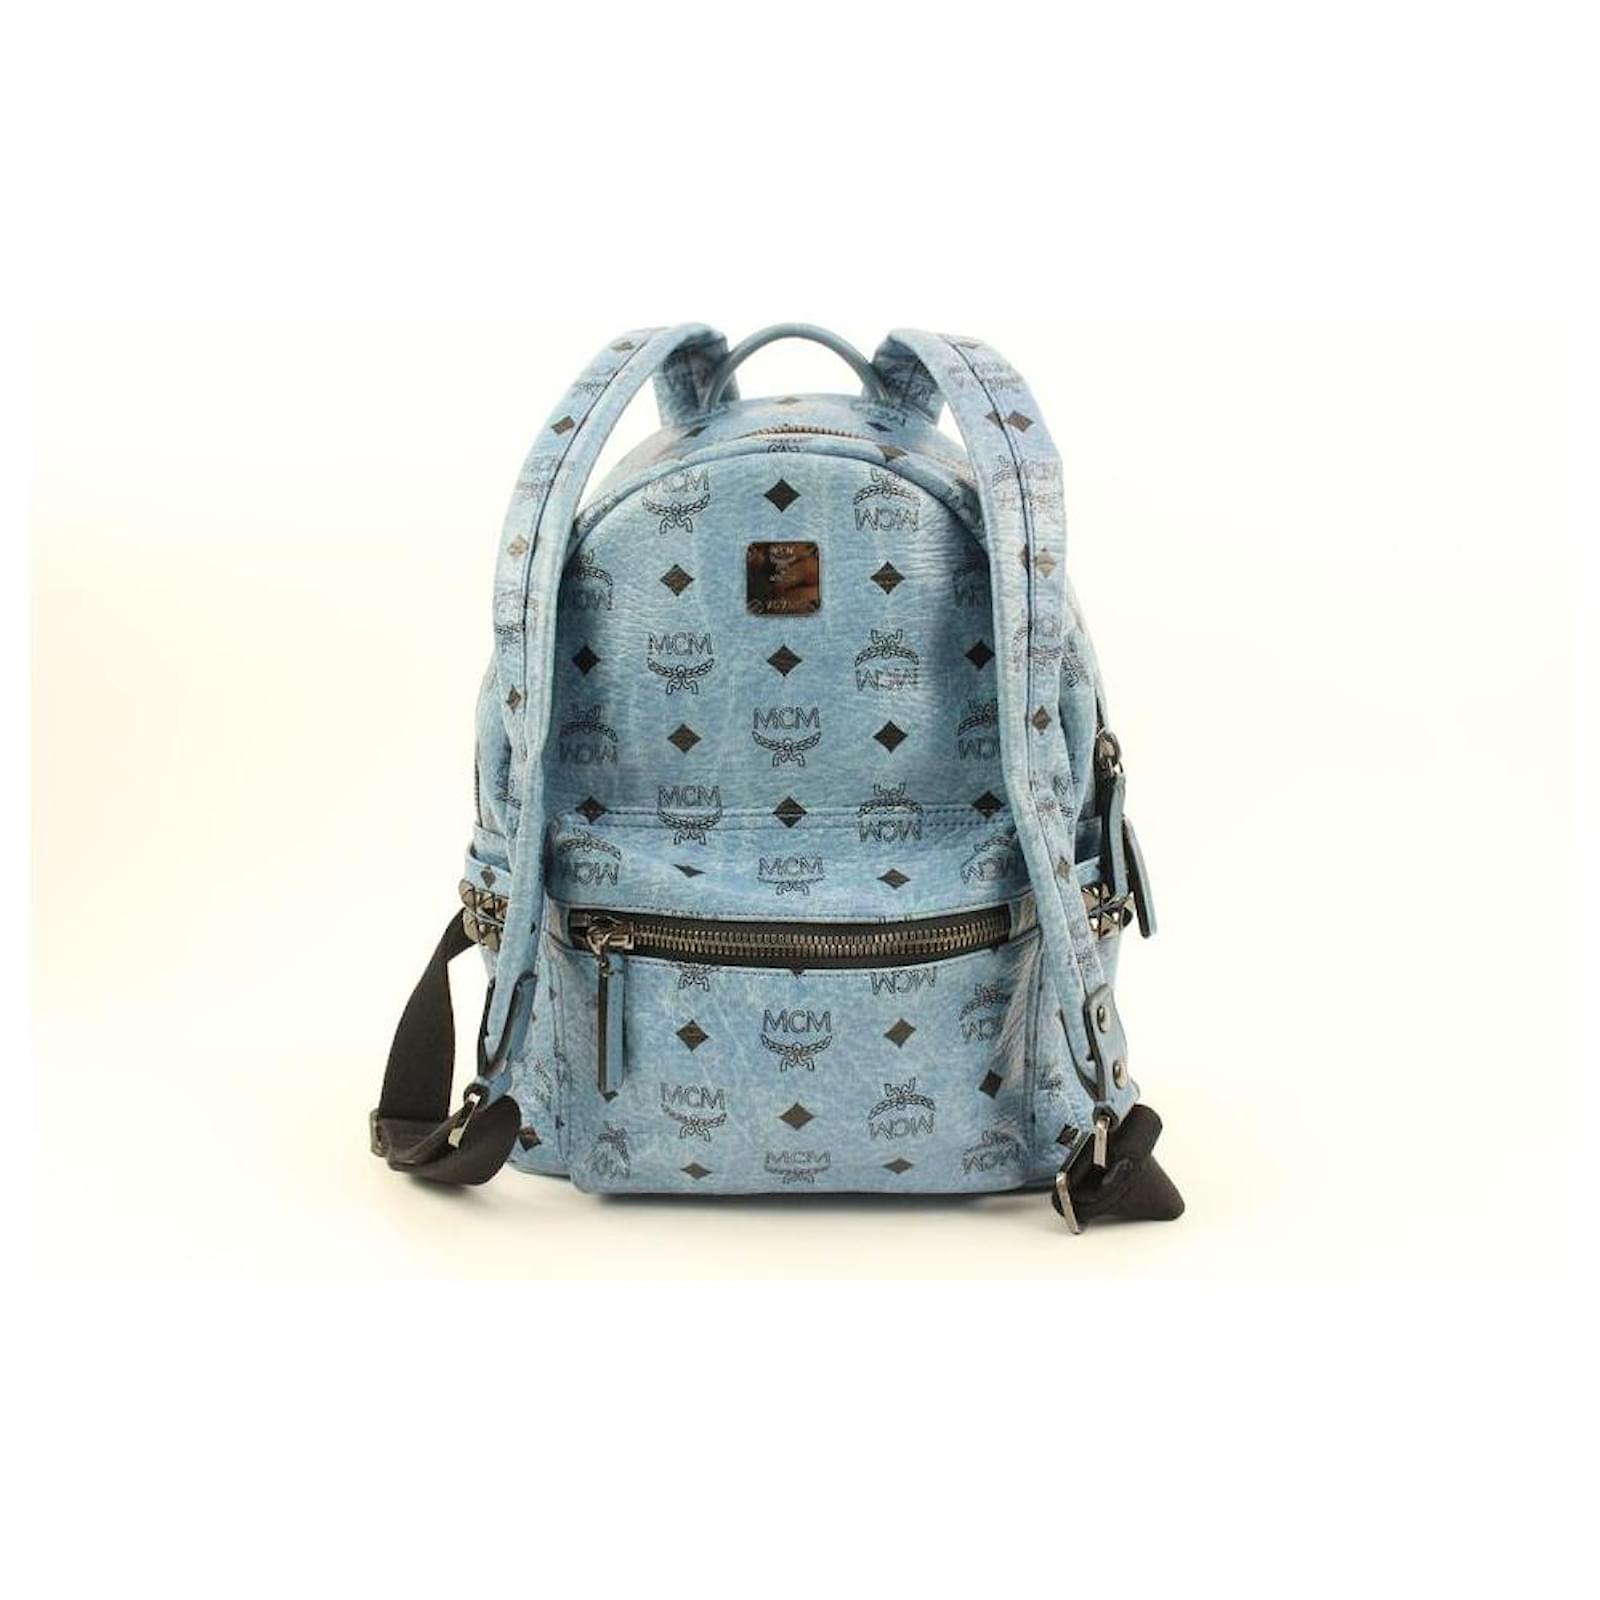 Mcm Stark Backpack in Visetos - Blue - Backpacks